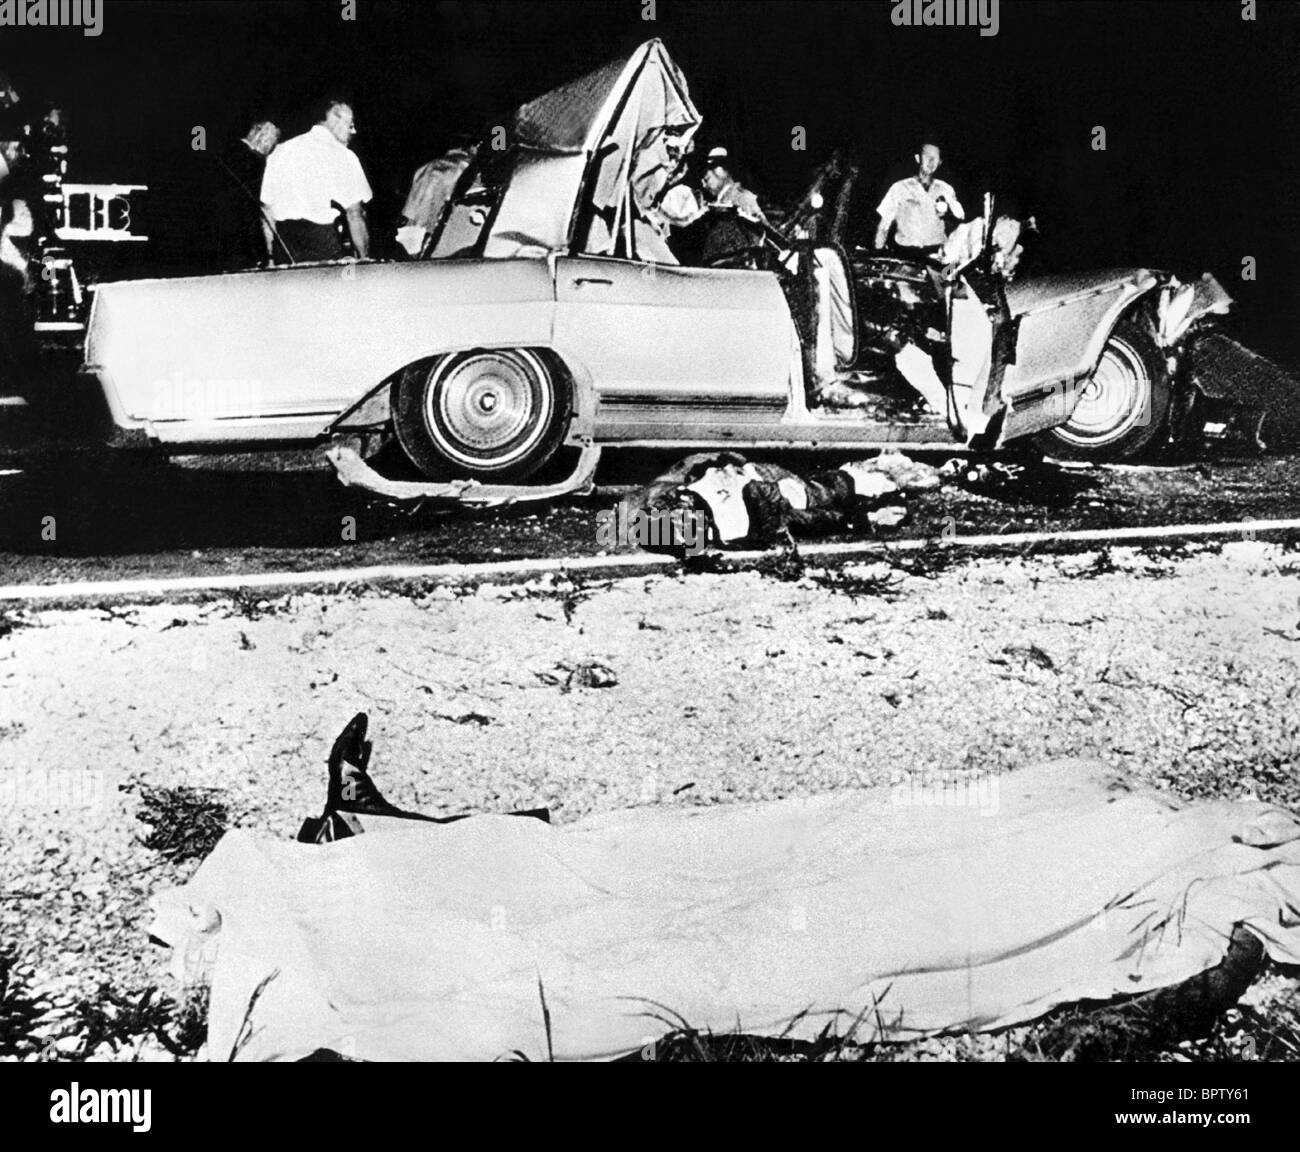 jayne-mansfield-autounfall-die-get-teten-jayne-mansfield-1967